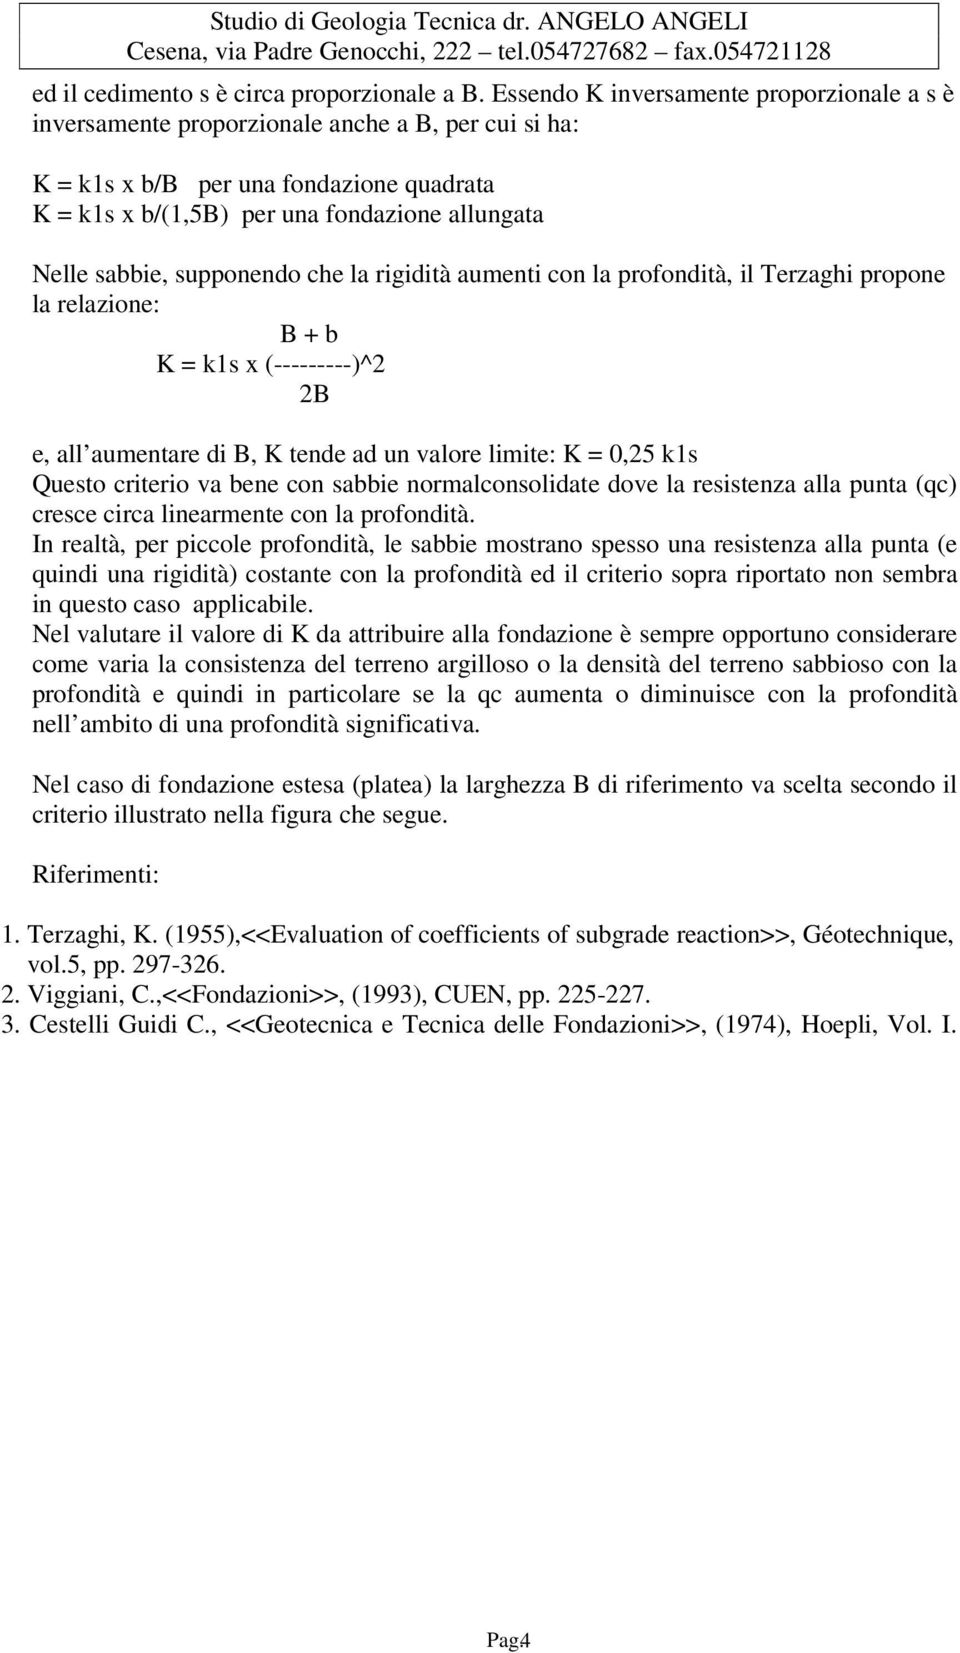 supponendo che la rigidità aumenti con la profondità, il Terzaghi propone la relazione: B + b K = k1s x (---------)^2 2B e, all aumentare di B, K tende ad un valore limite: K = 0,25 k1s Questo